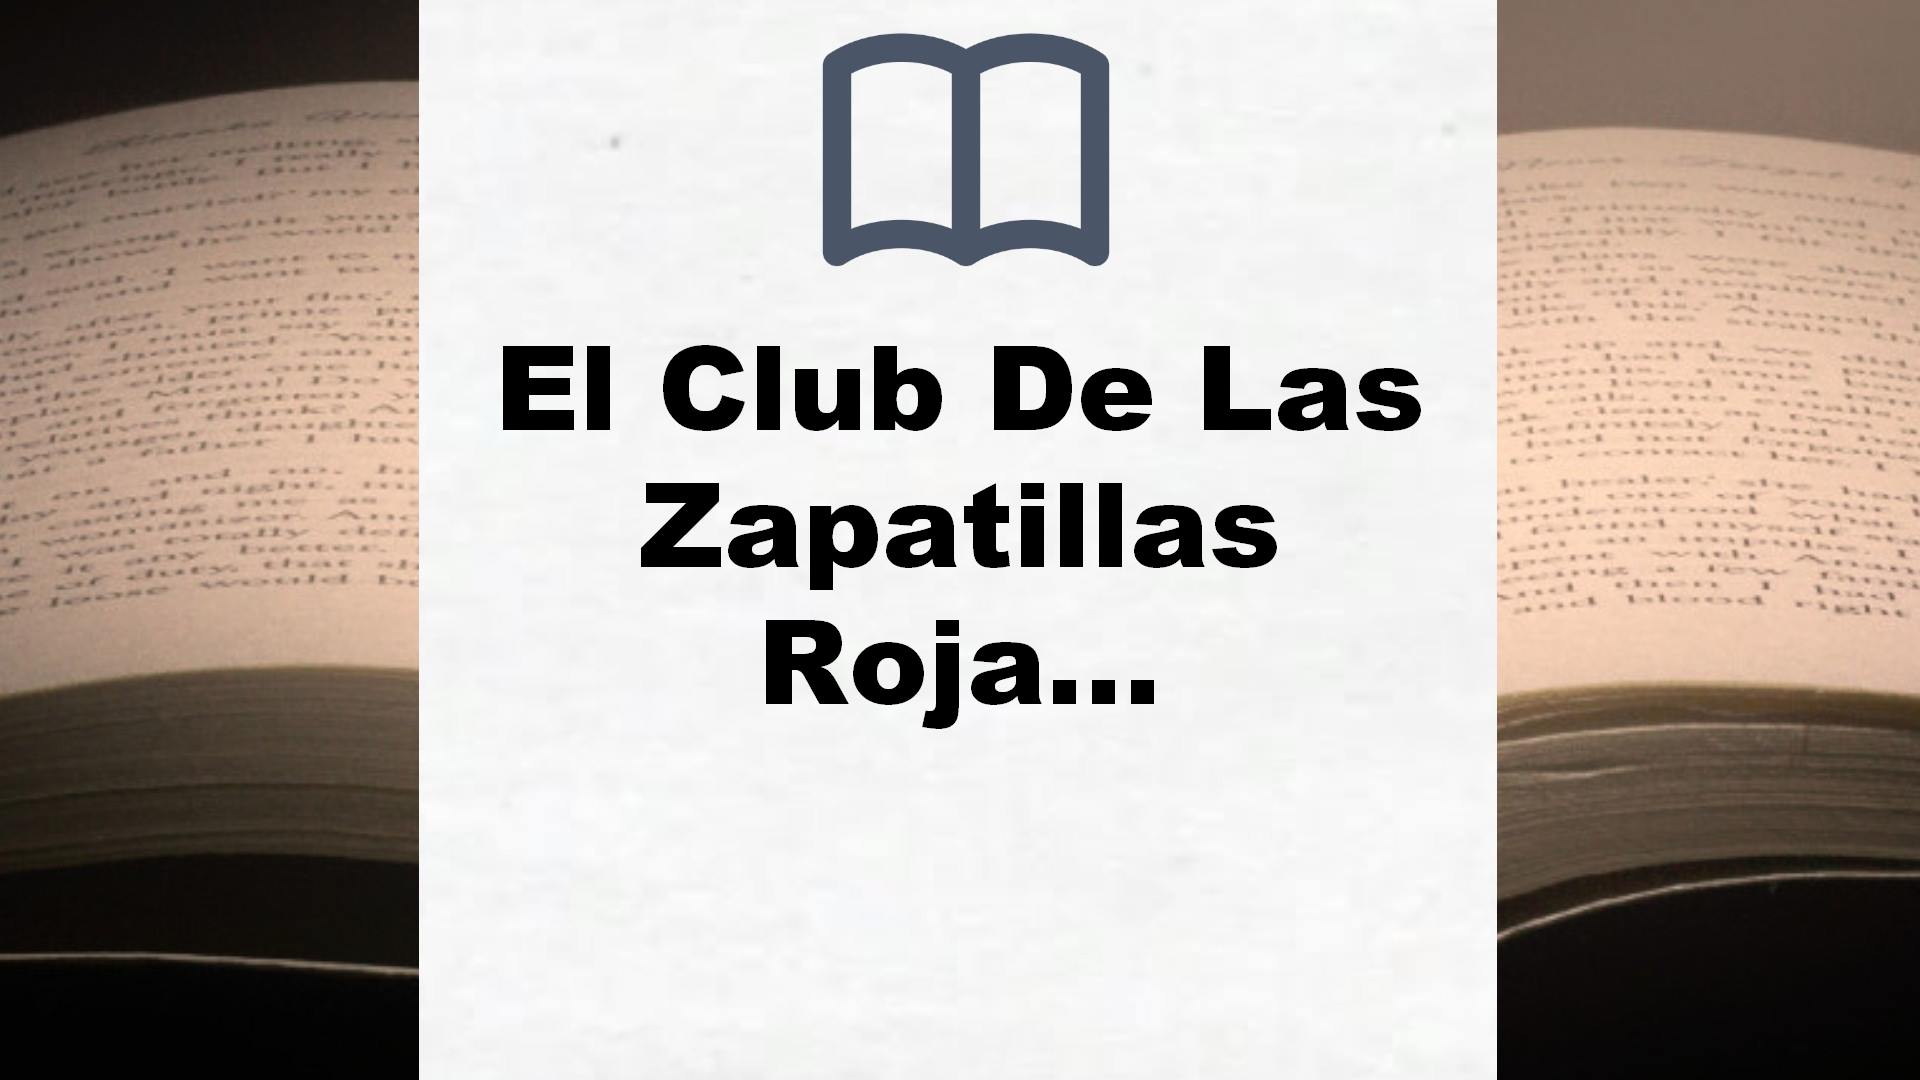 El Club De Las Zapatillas Rojas: Novela infantil-juvenil sobre amistad. Lectura de 8-9 a 11-12 años. Libros para niñas y niños (El Club de las Zapatillas Rojas 1) – Reseña del libro